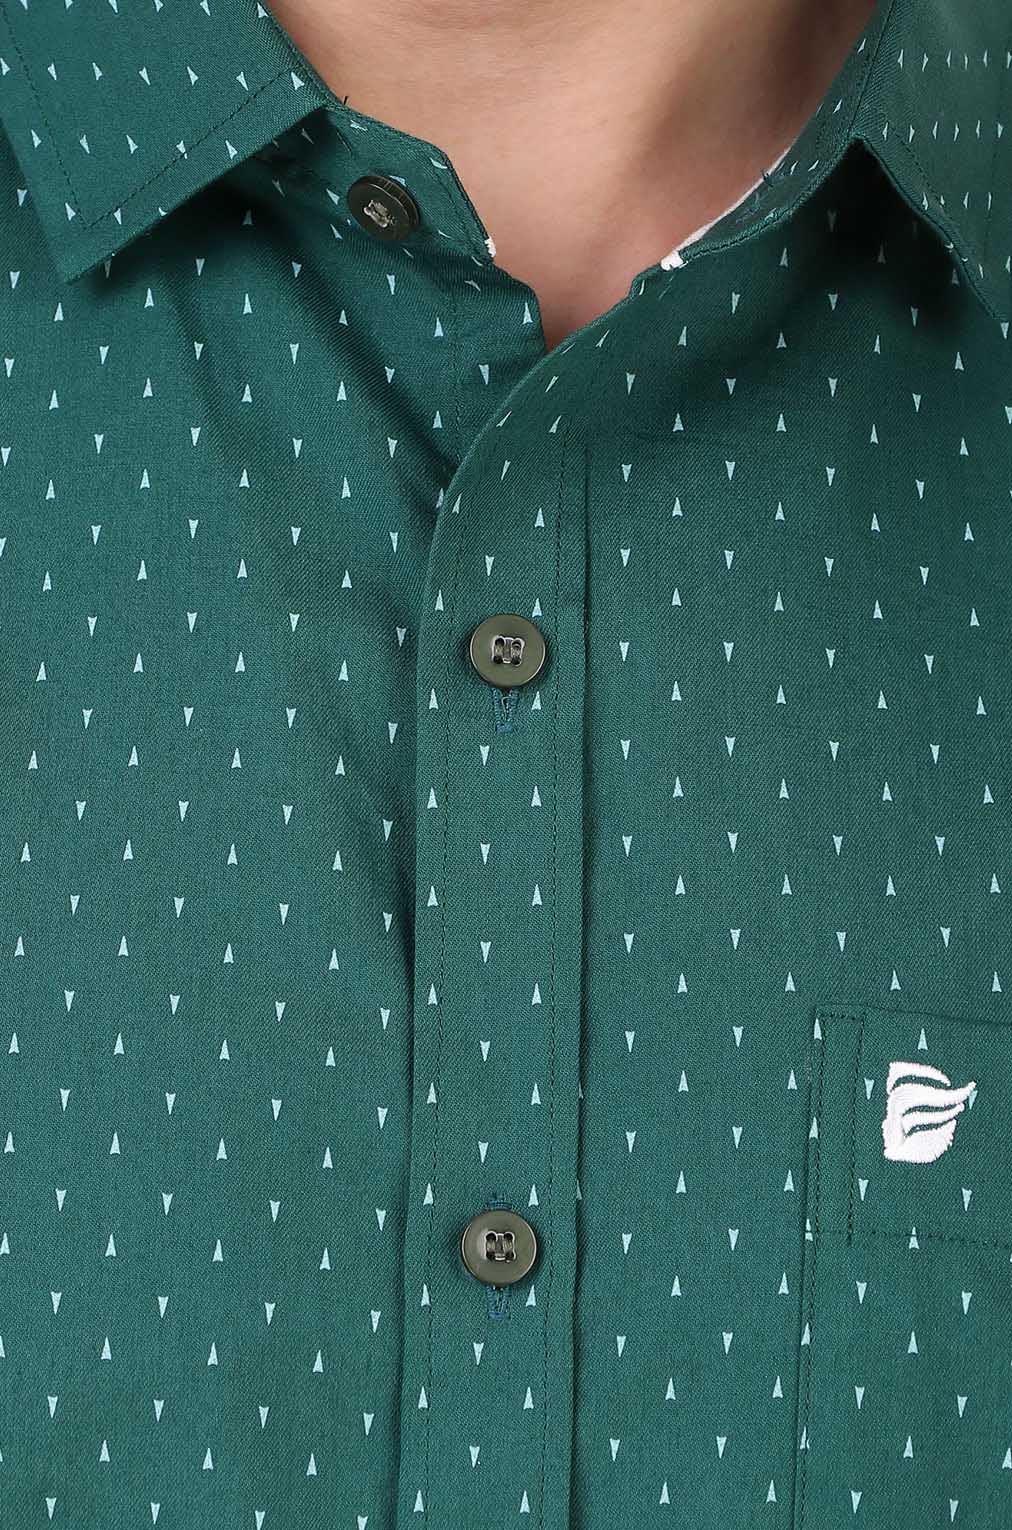 Men Green Printed Slim Fit Formal Shirt